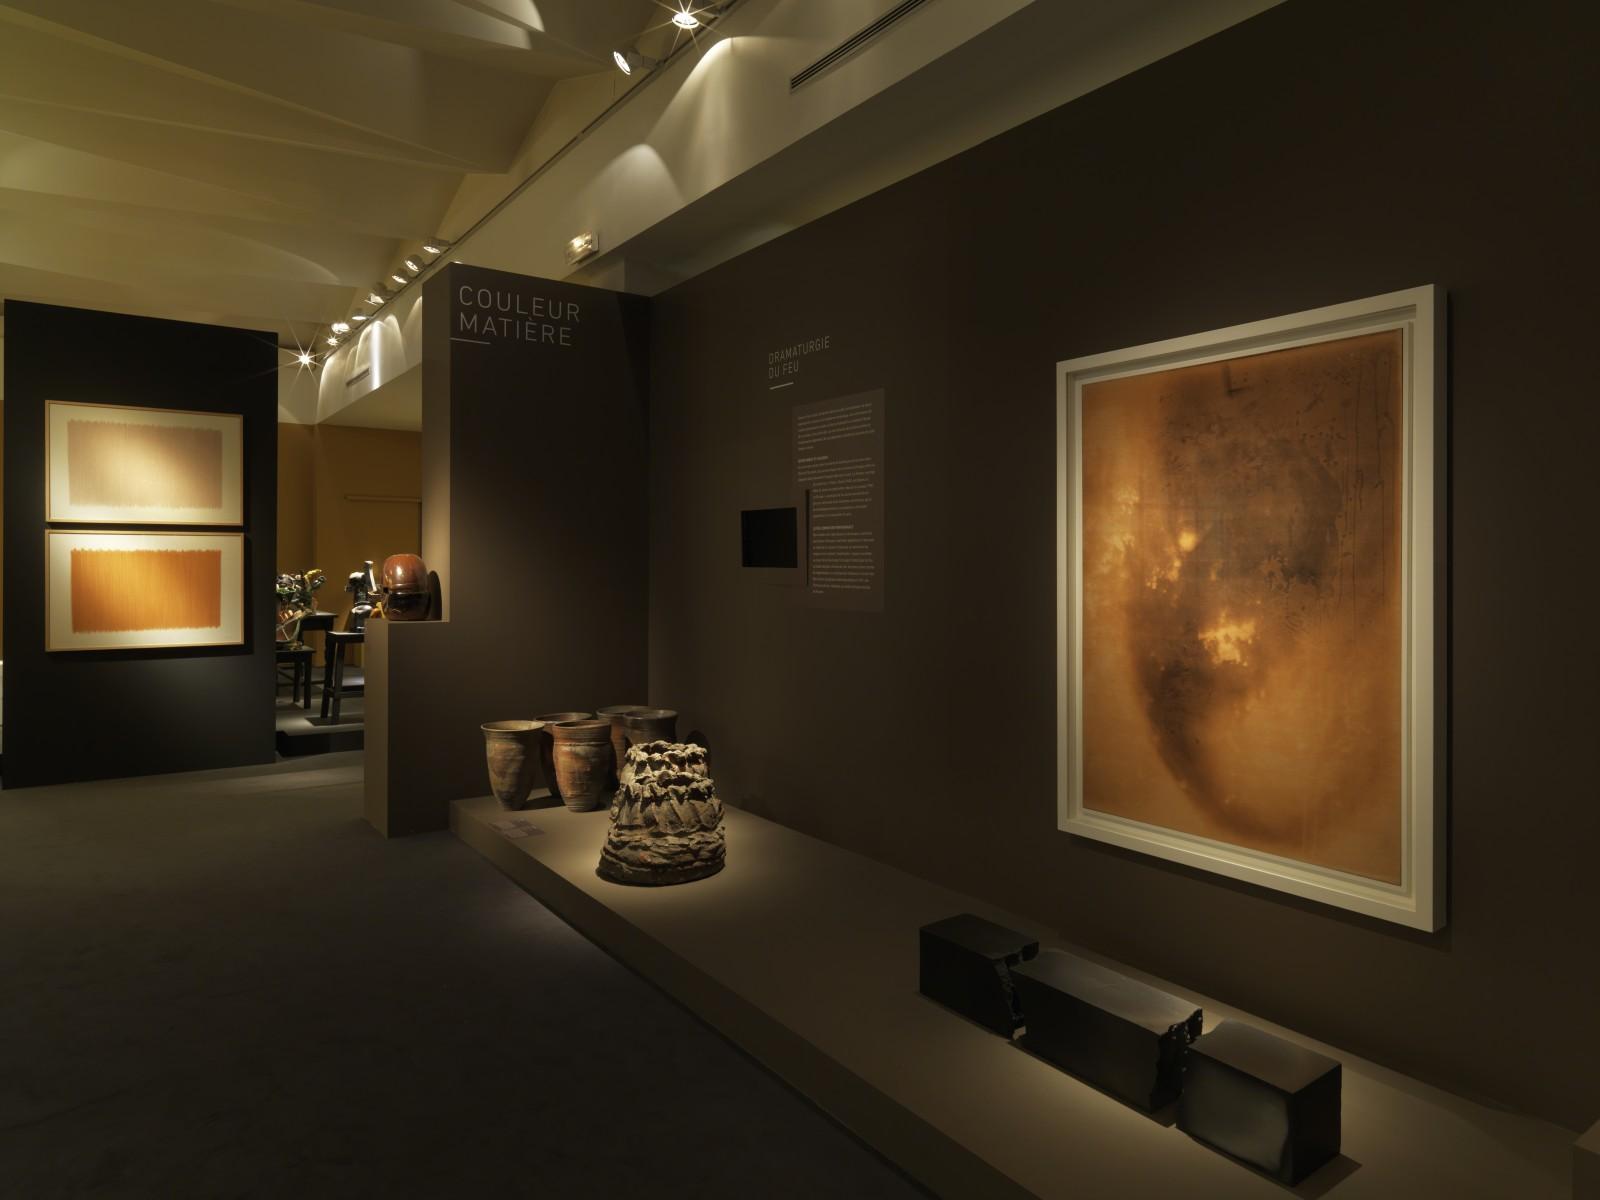 Vue de l'exposition "L’expérience de la couleur", Musée nationale de céramique, 2017 (F 74)